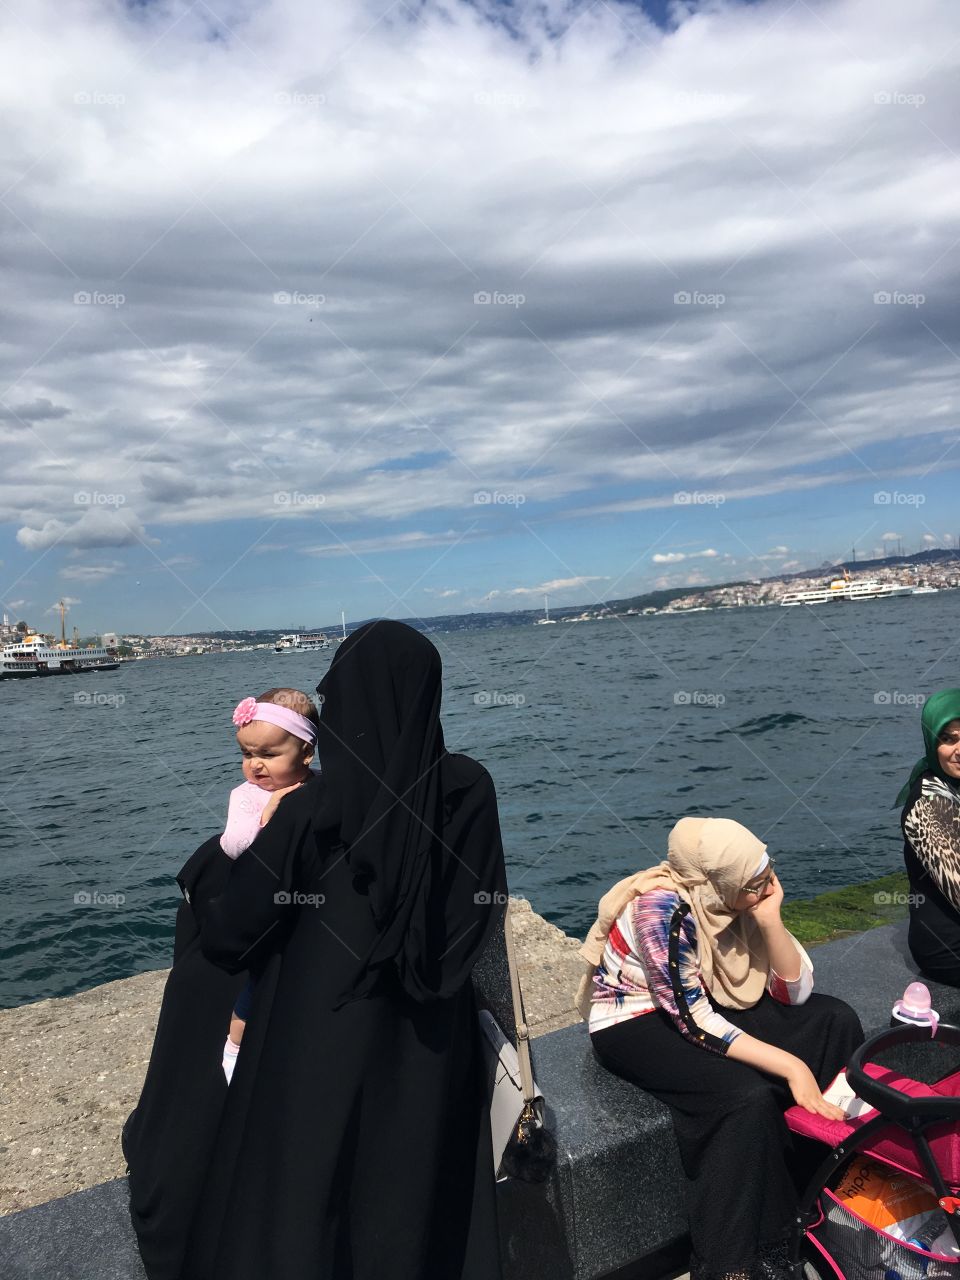 Baby on the Bosphorus